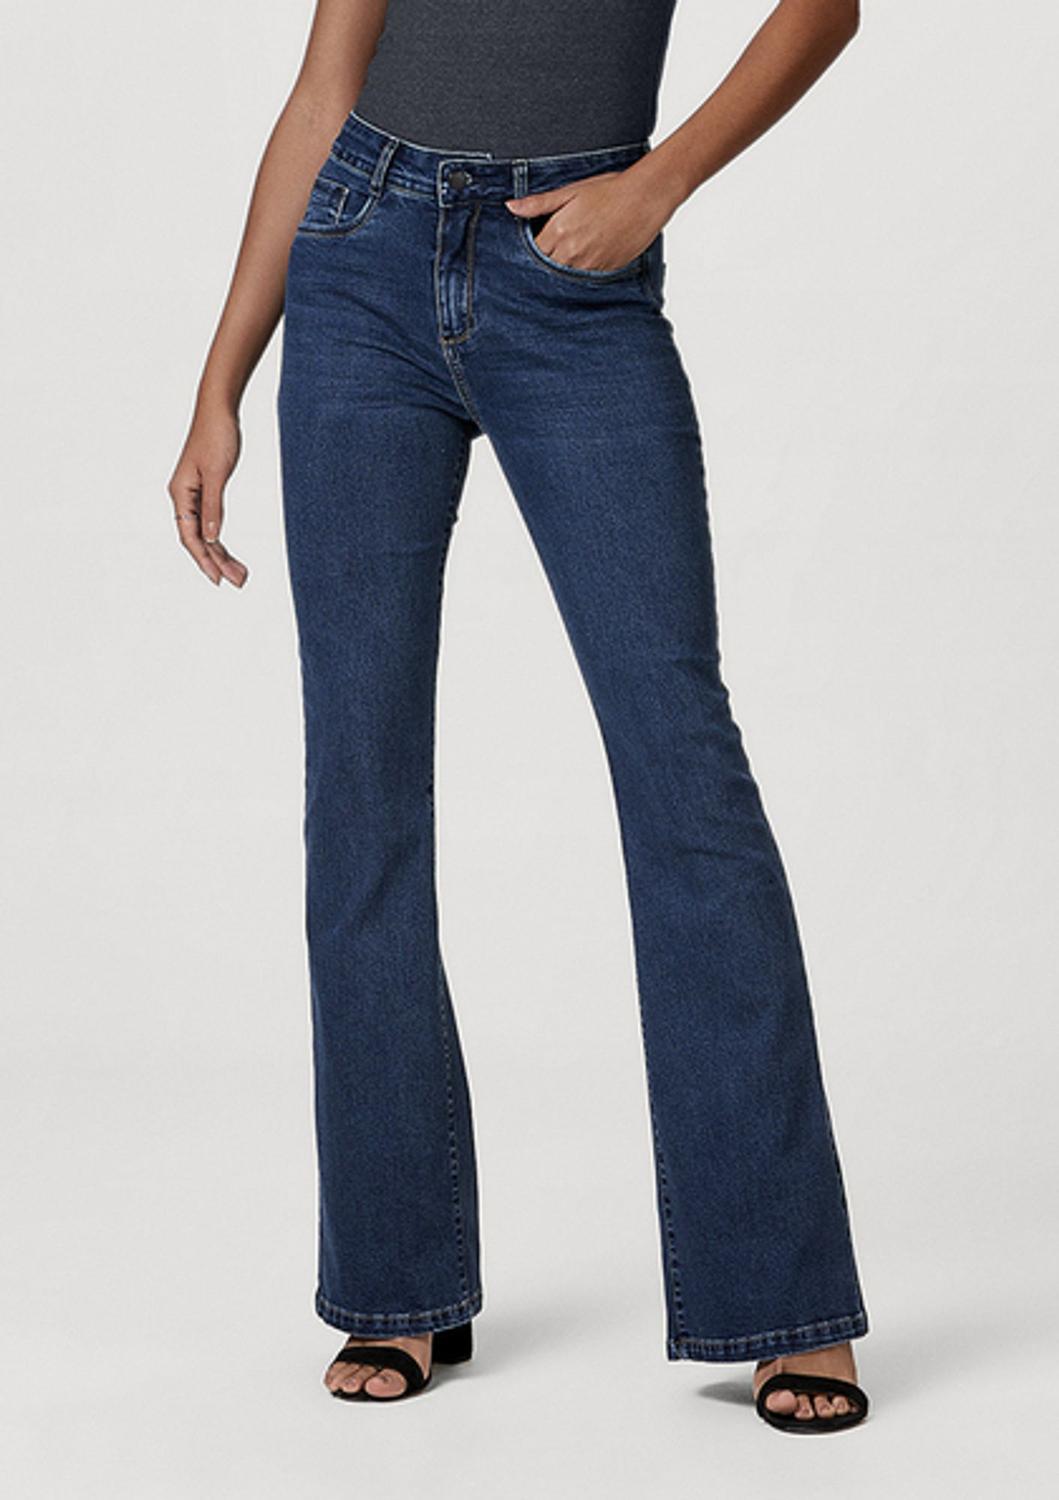 quero ver calça jeans feminina